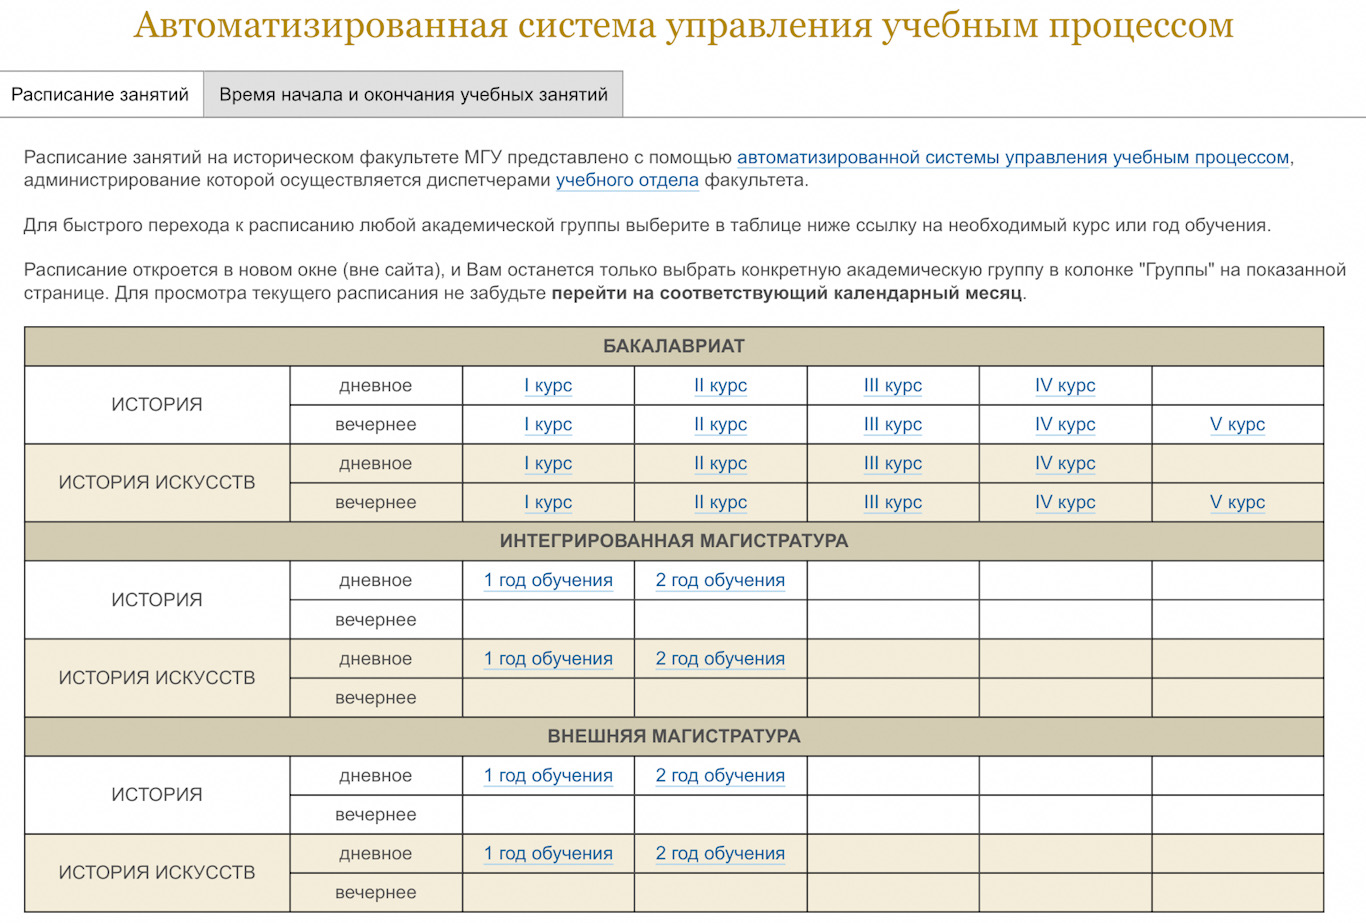 Расписание занятий в весеннем семестре 2022/2023 учебного года